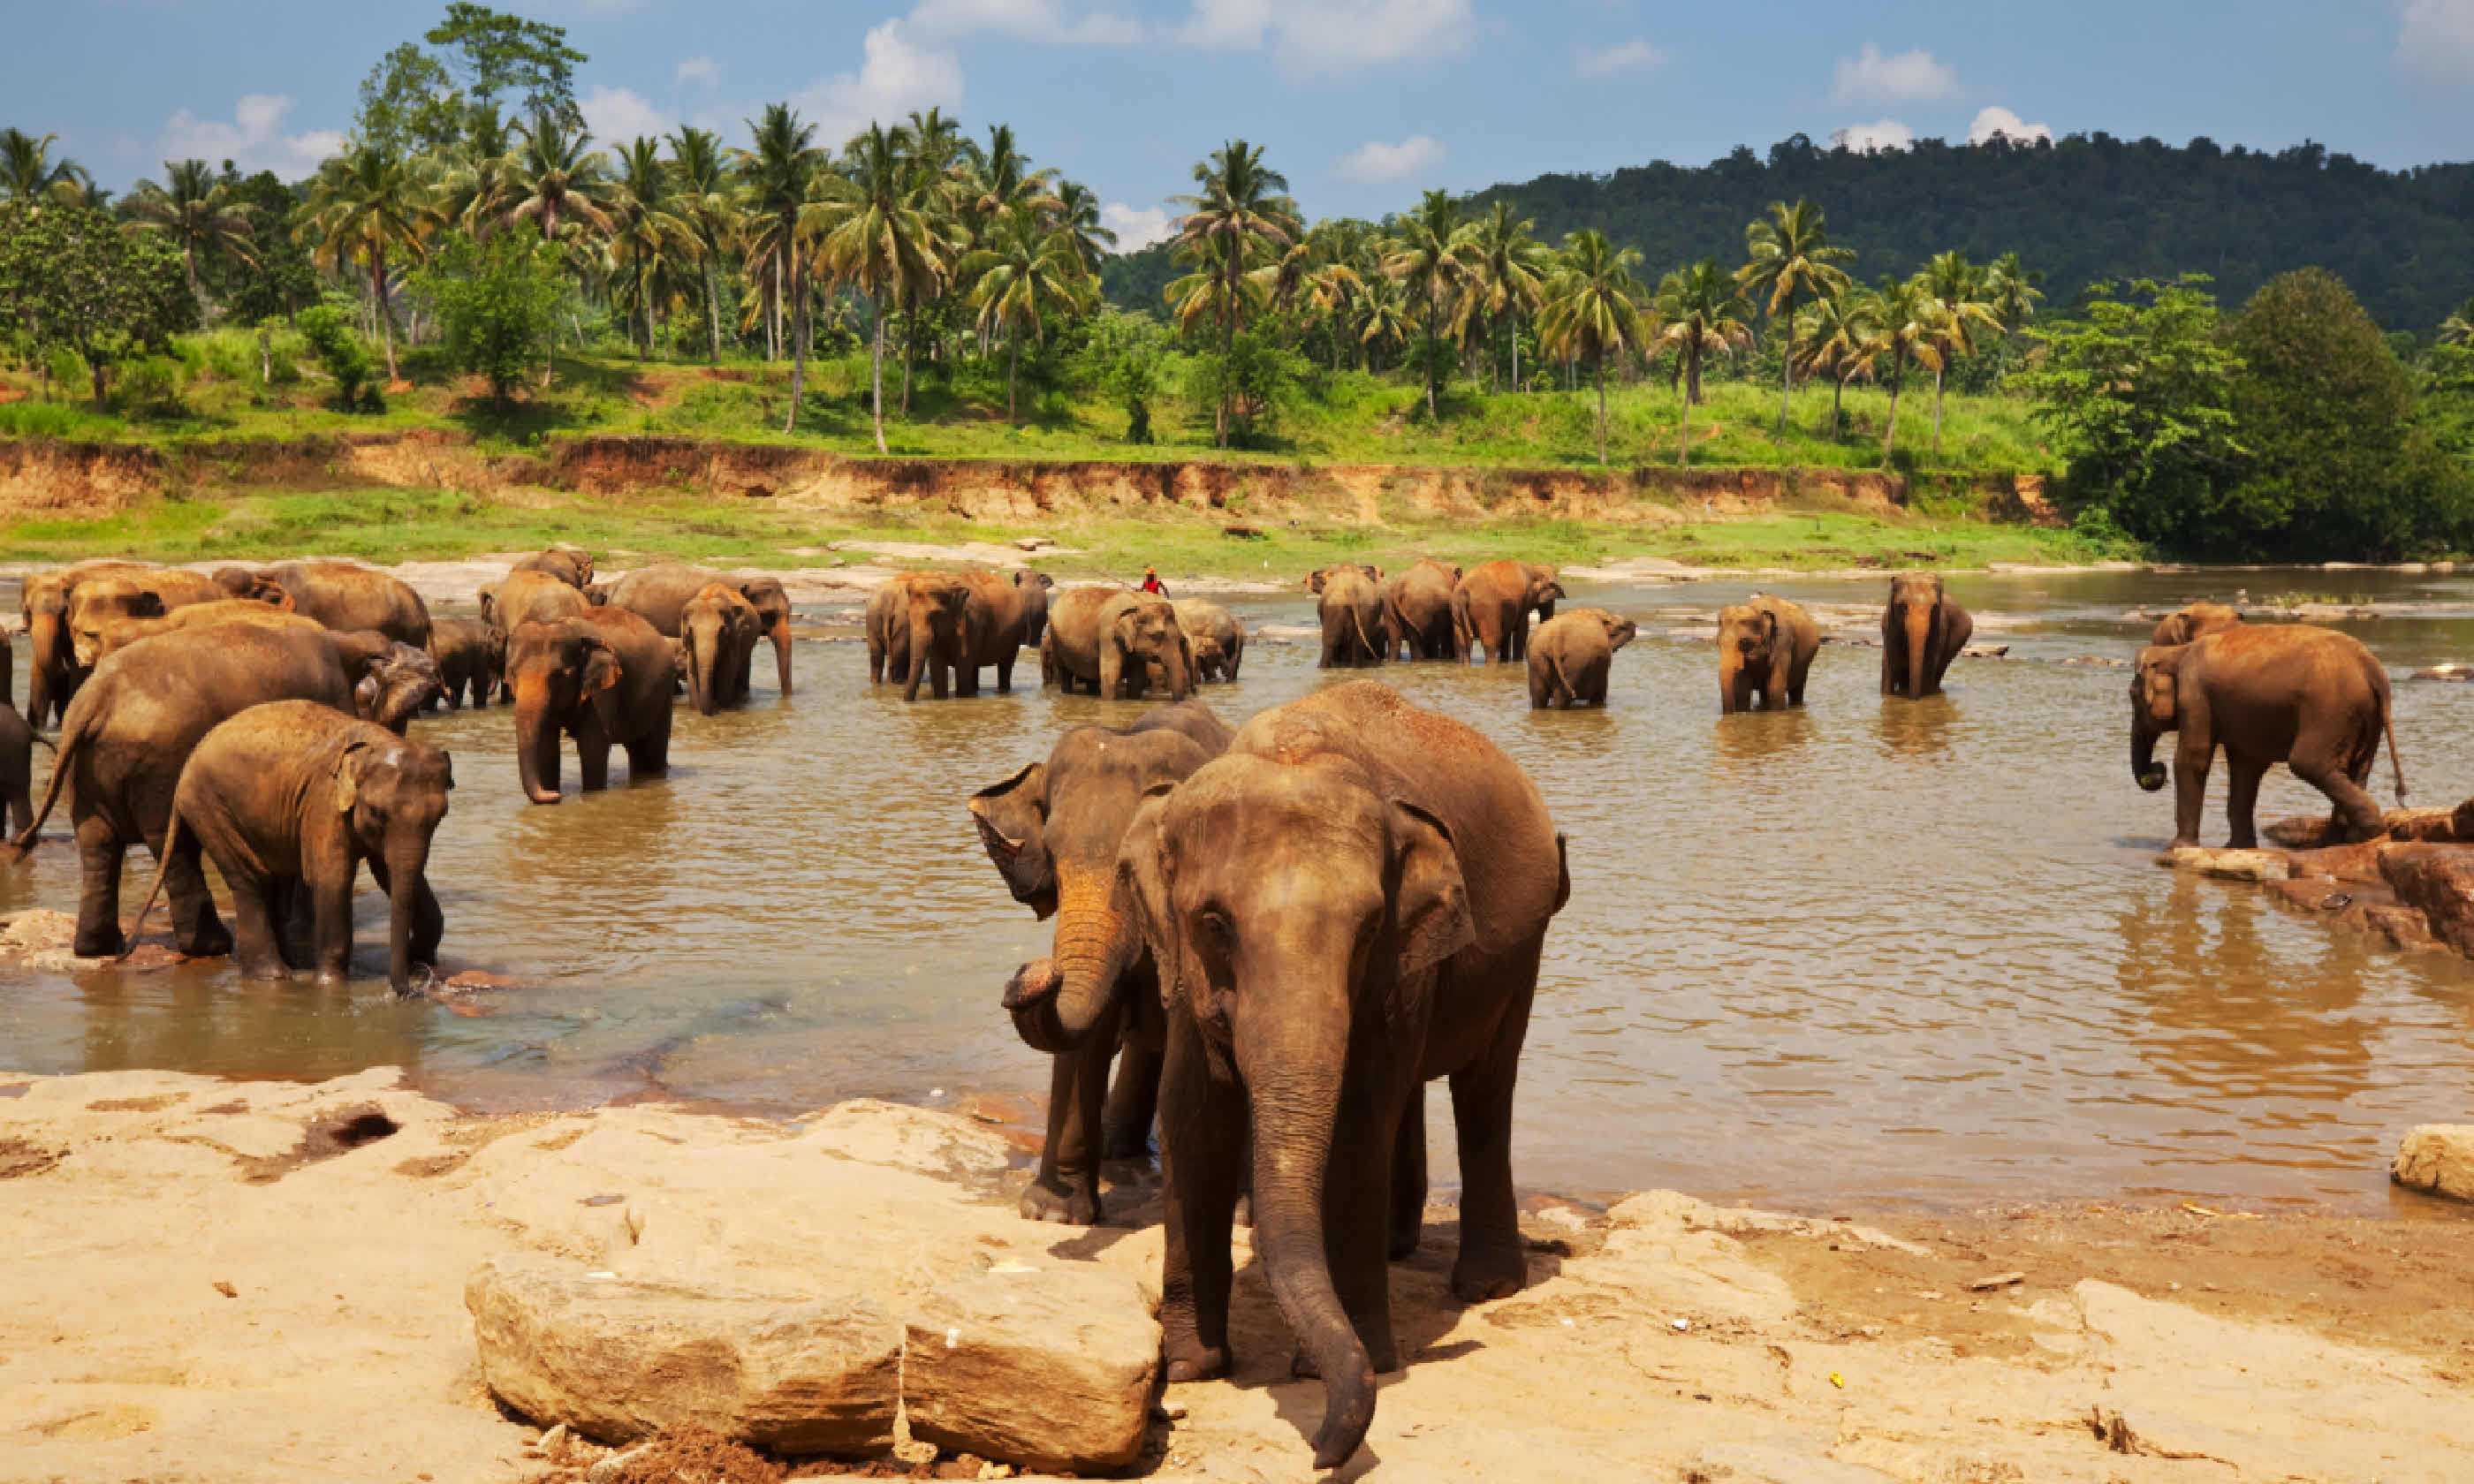 Elephants in Sri Lanka (Shutterstock)